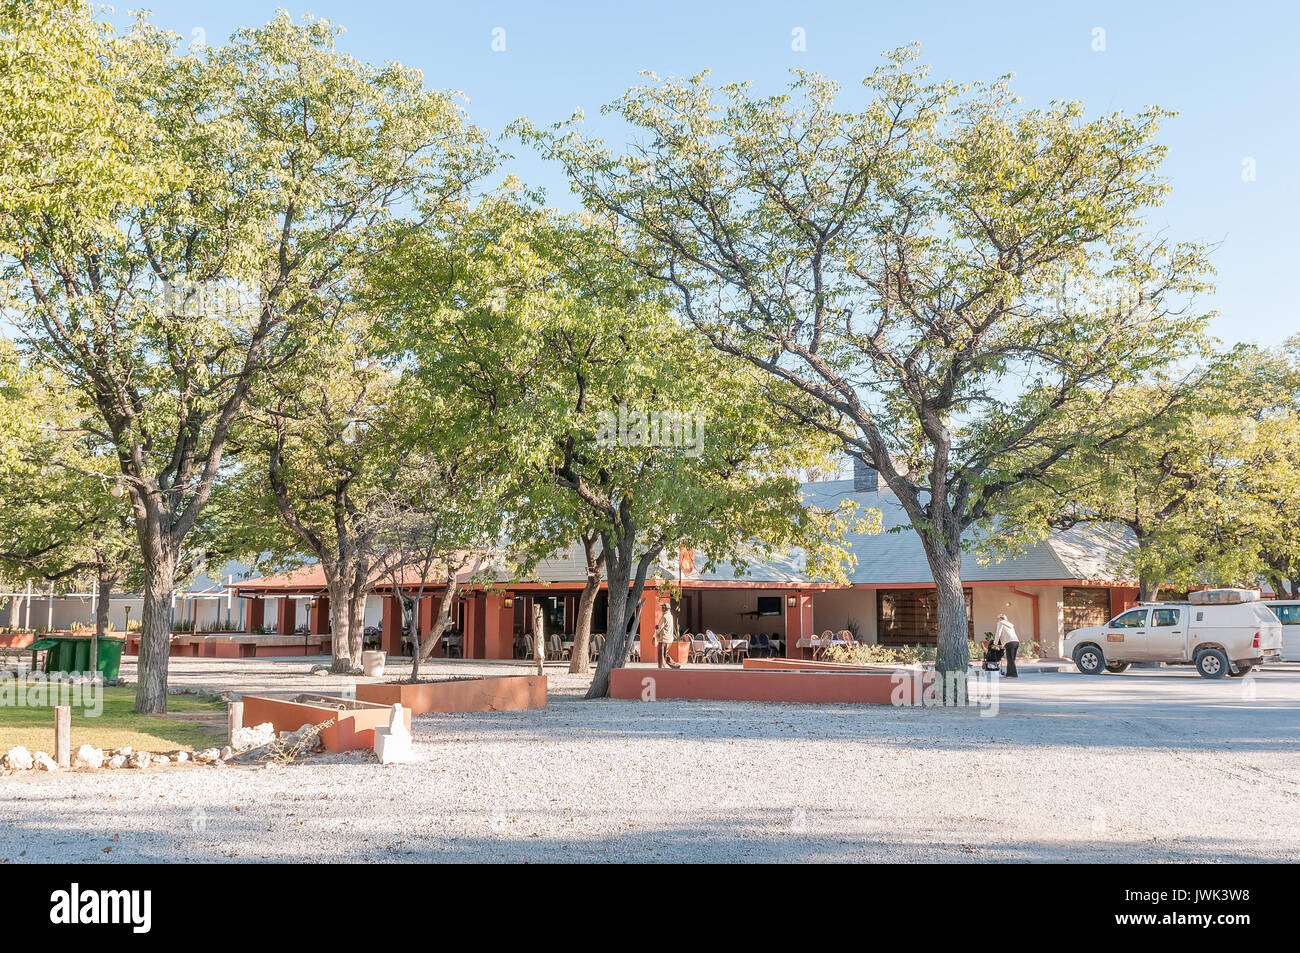 Parc national d'Etosha, Namibie - Juin 22, 2017 : Le restaurant de l'Halali Rest Camp dans le Parc National d'Etosha, Namibie Banque D'Images